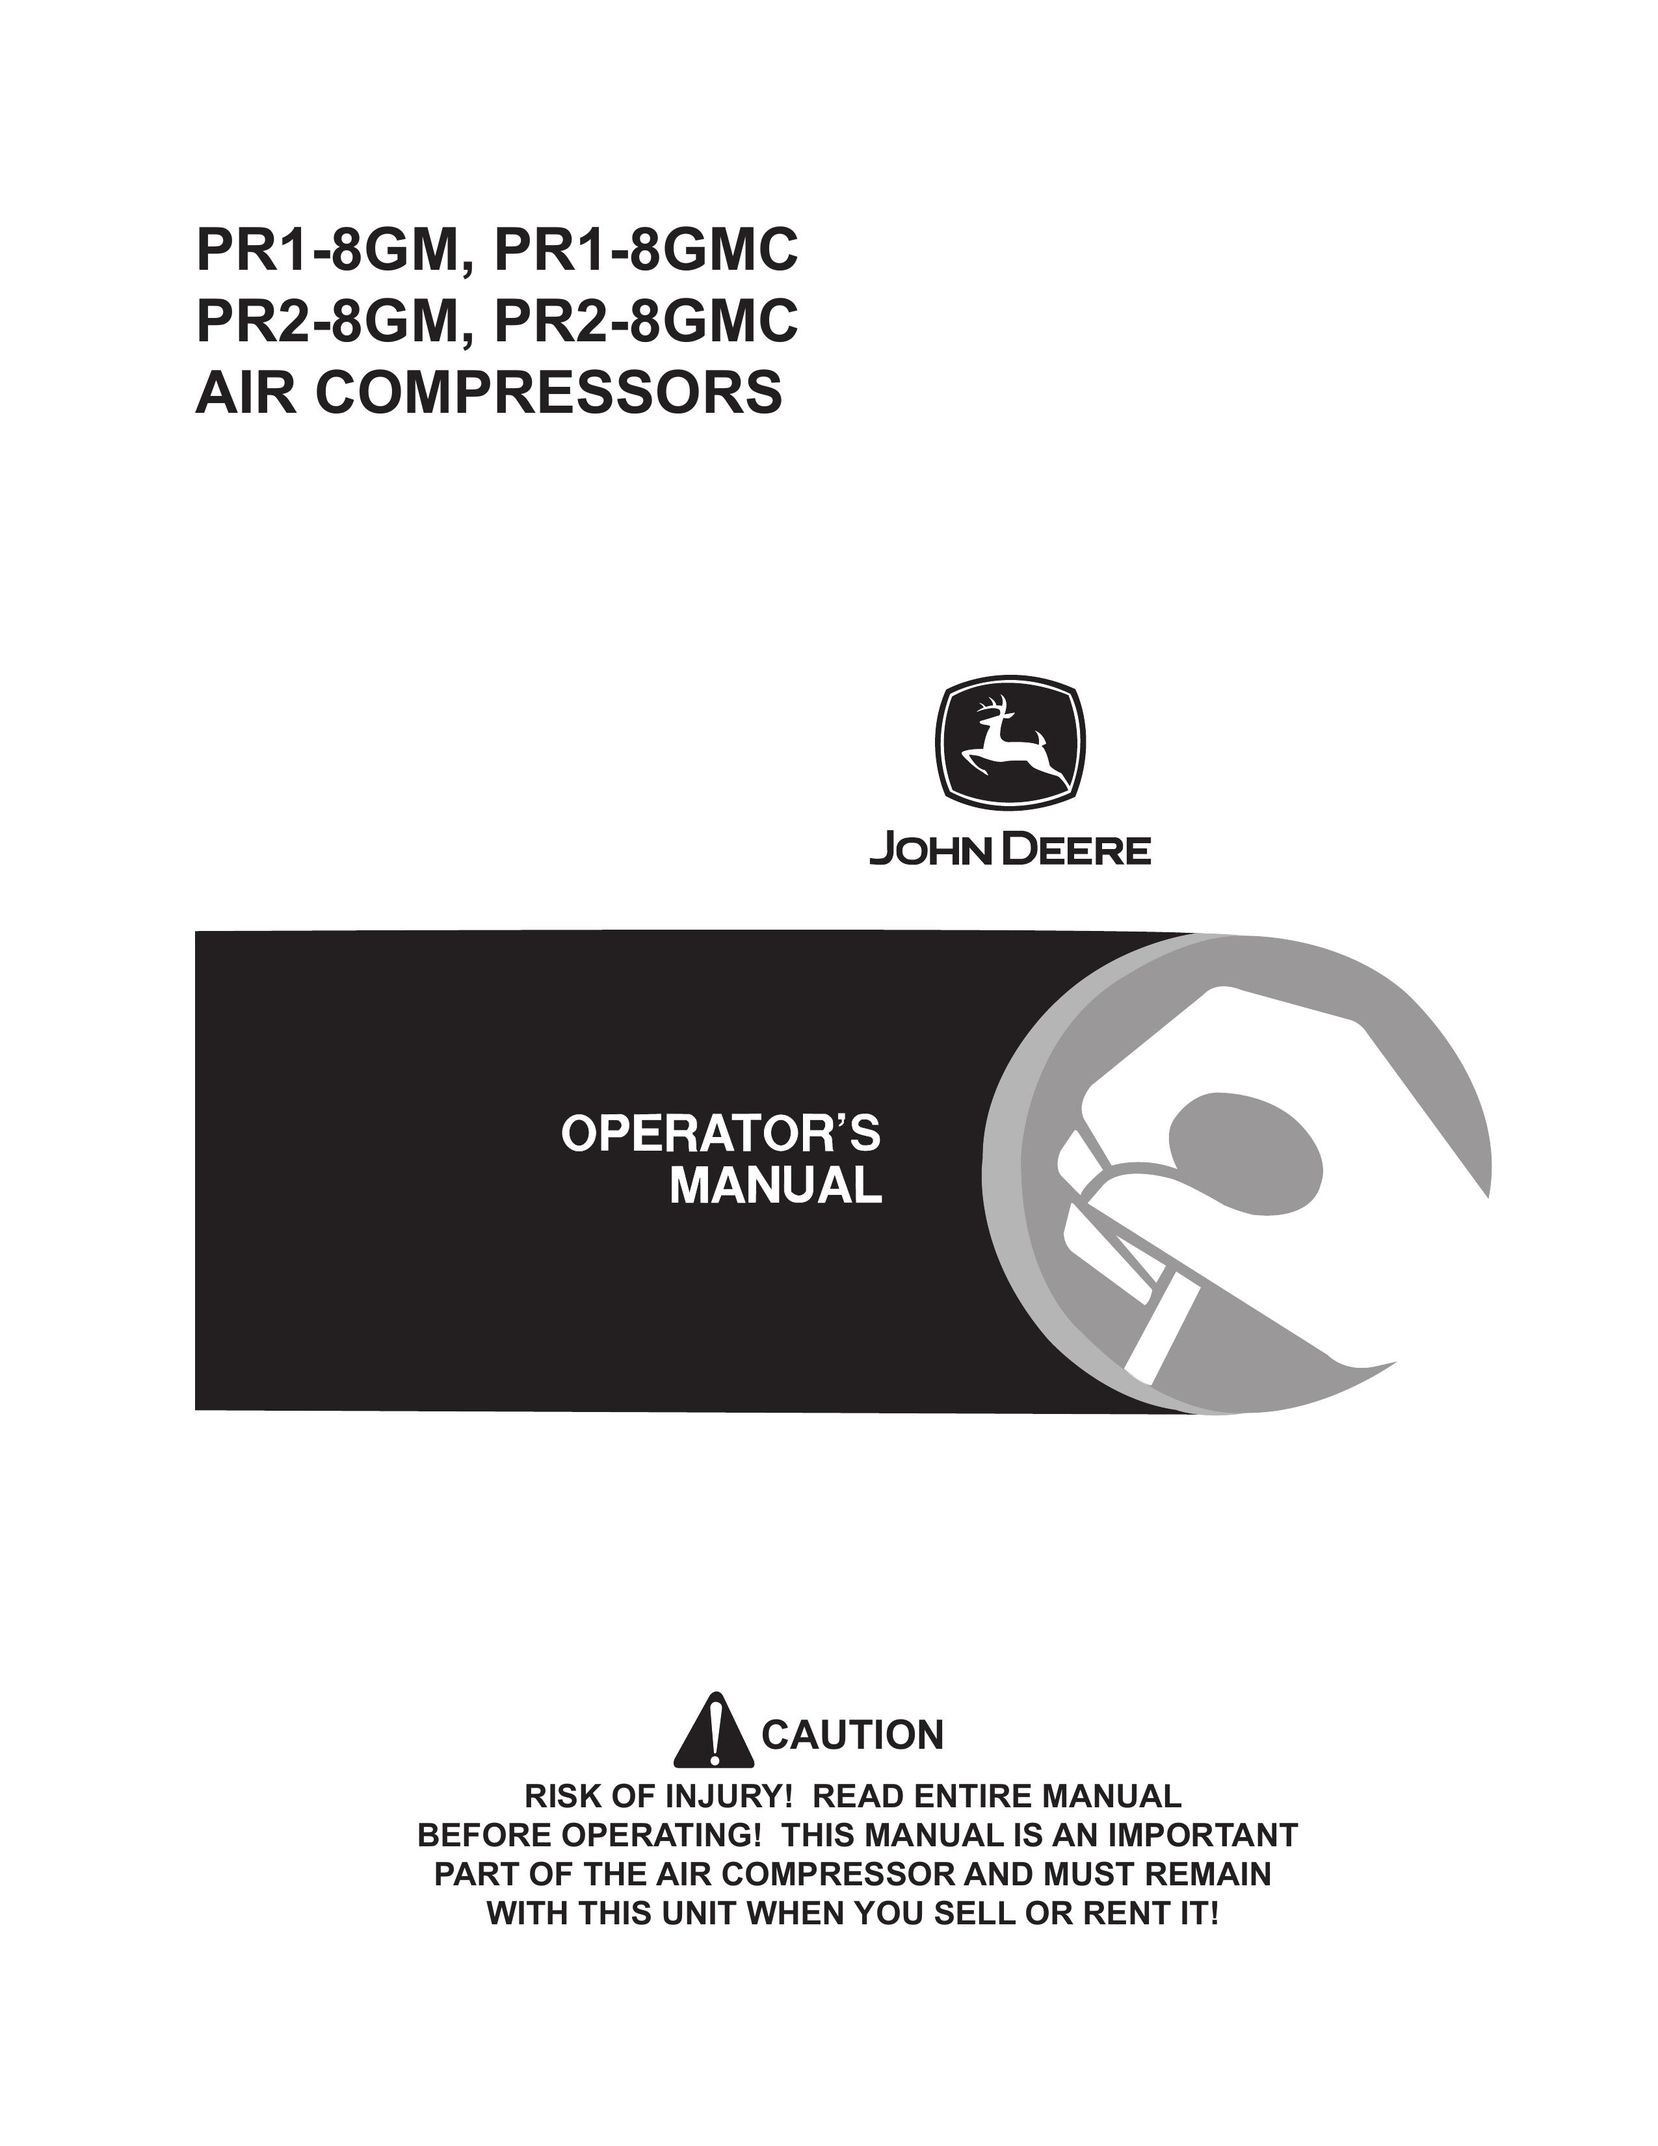 John Deere PR2-8GMC Air Compressor User Manual